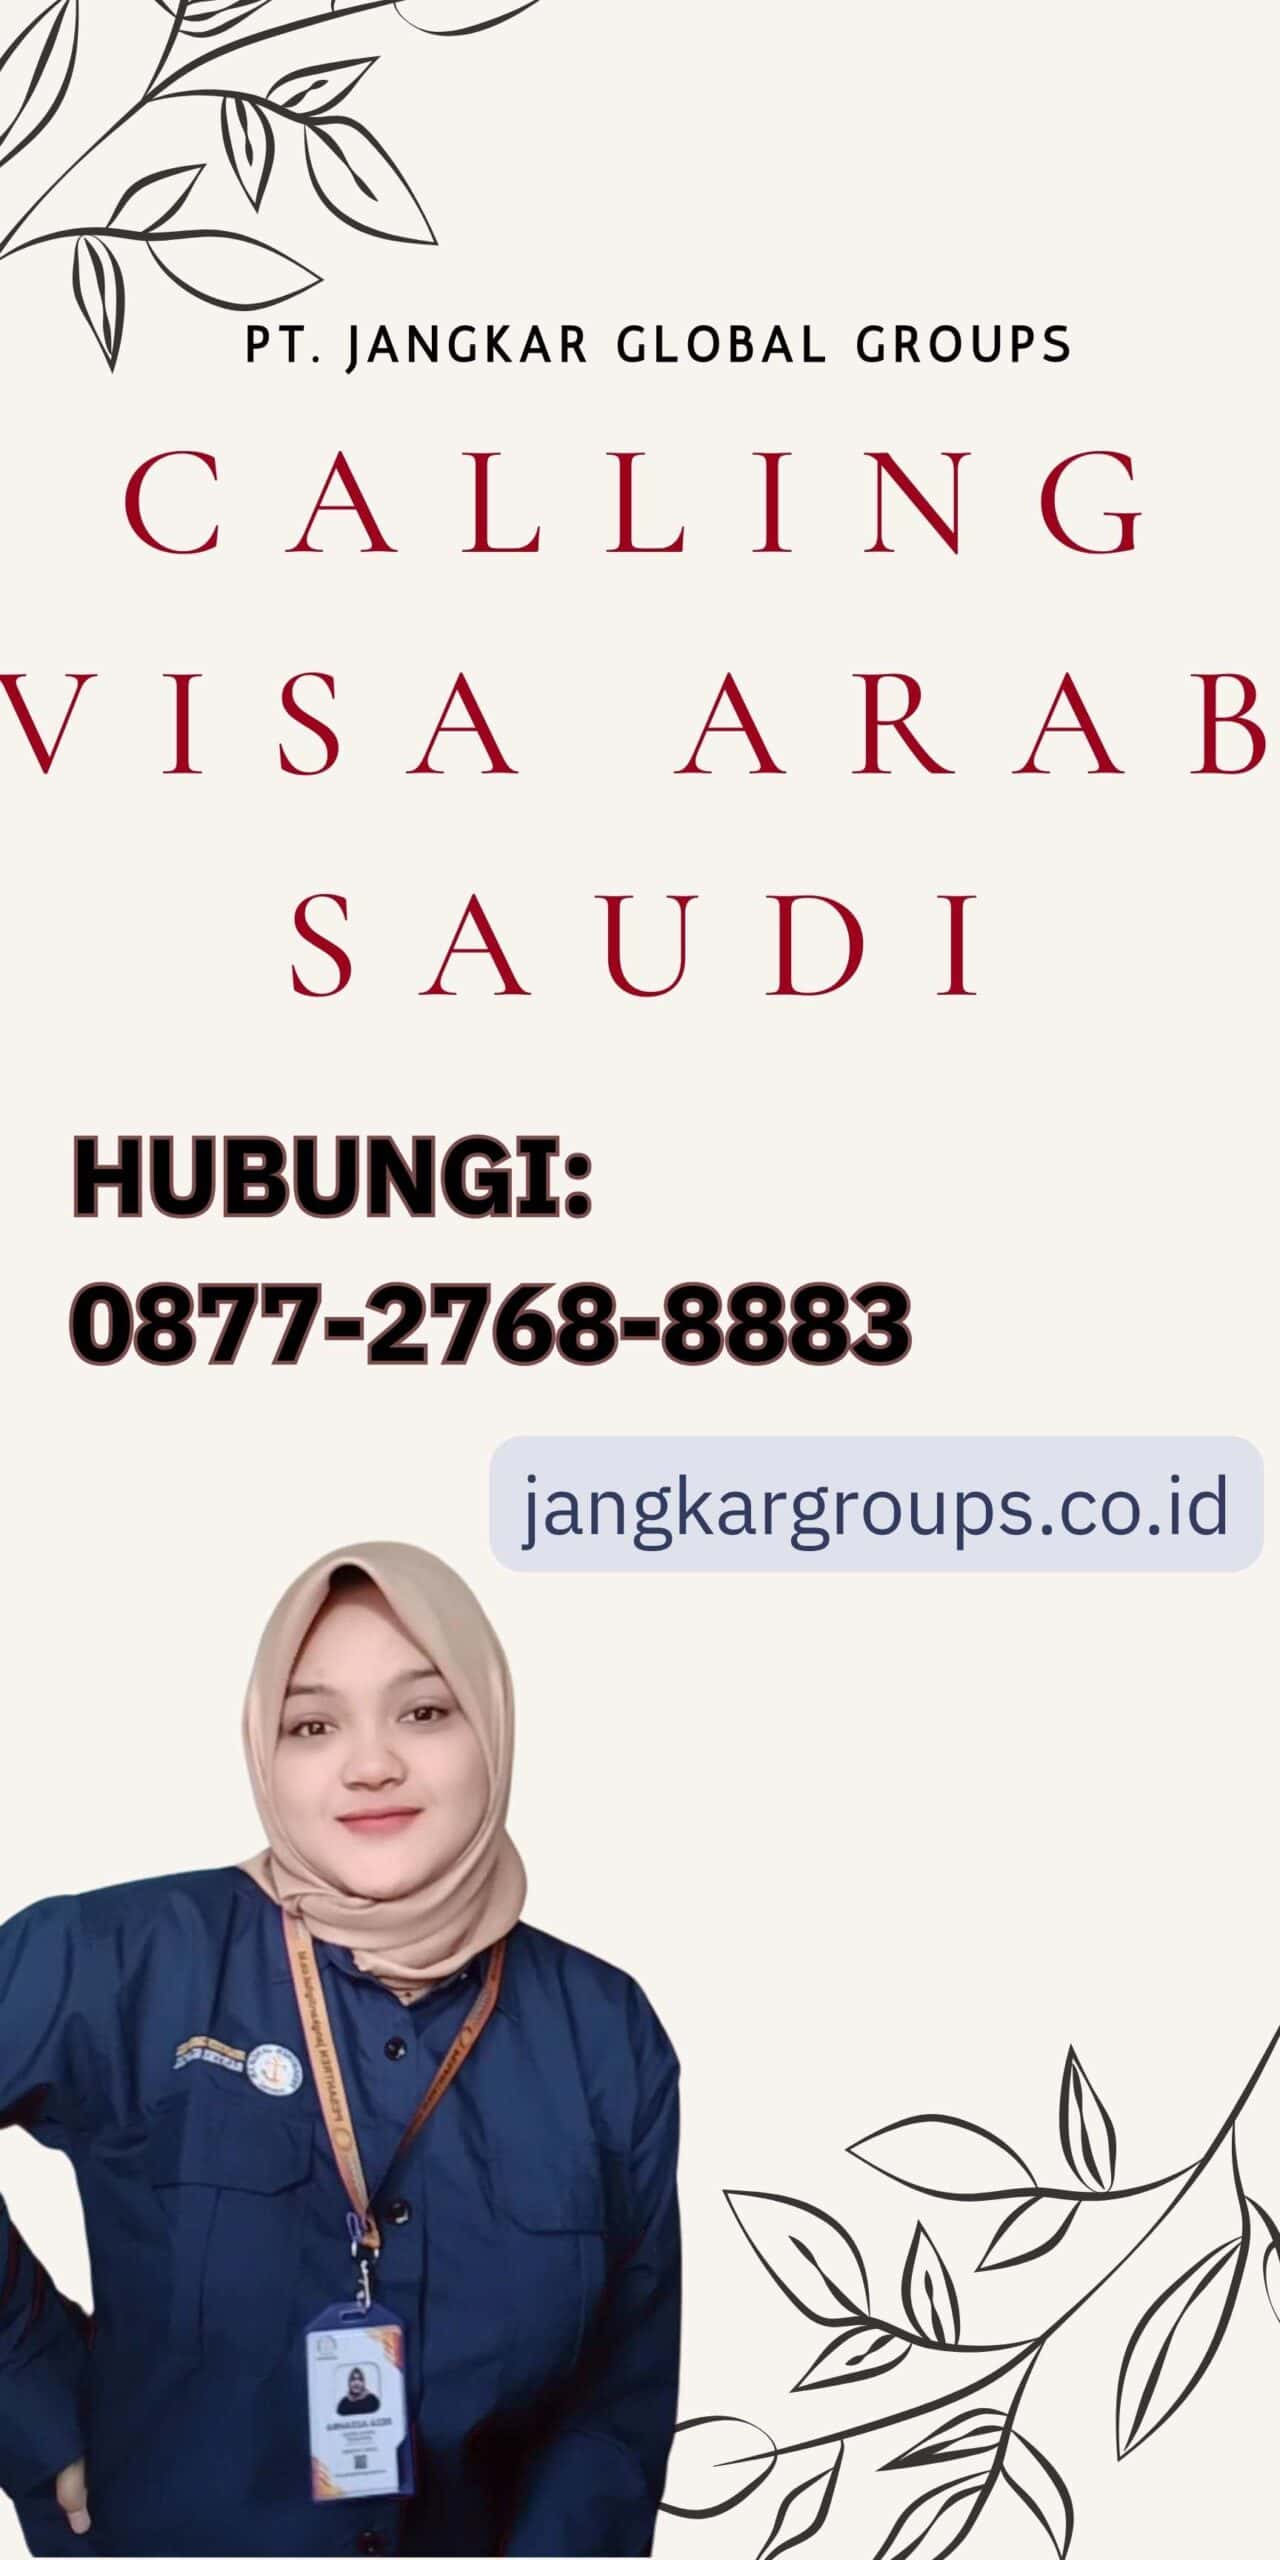 Calling Visa Arab Saudi